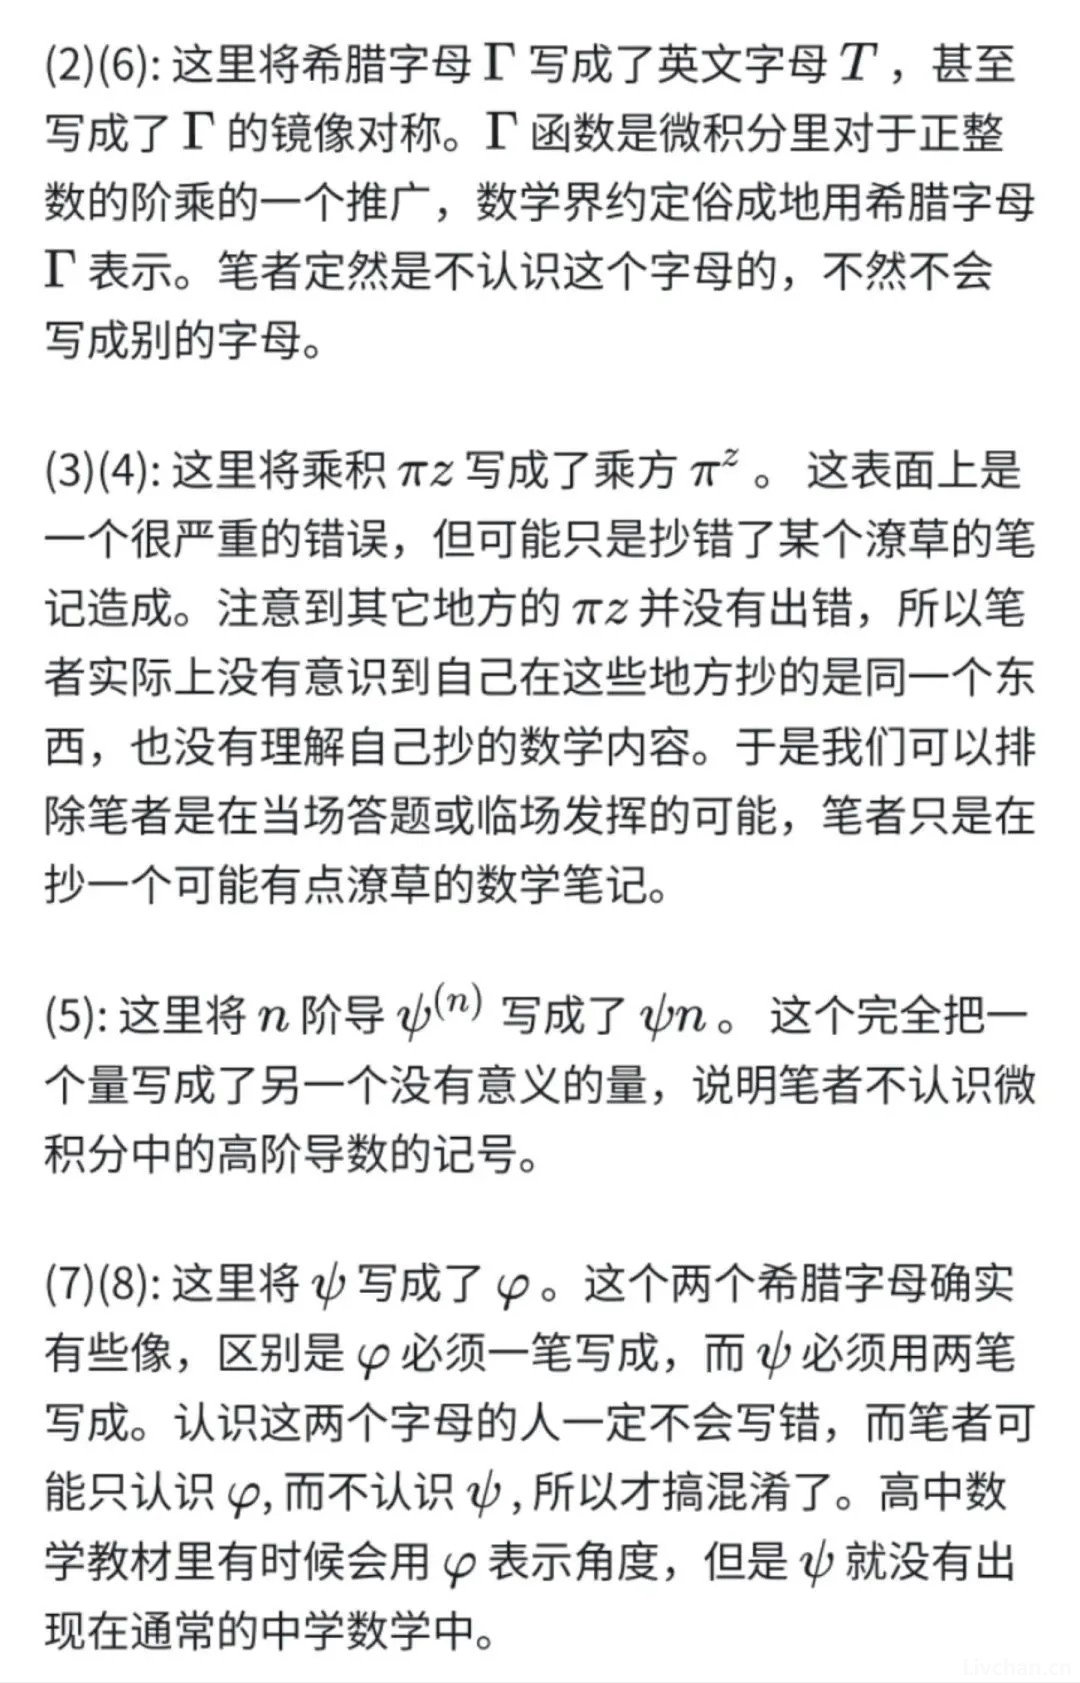 著名数学家北京大学袁新意教授评论姜萍事件